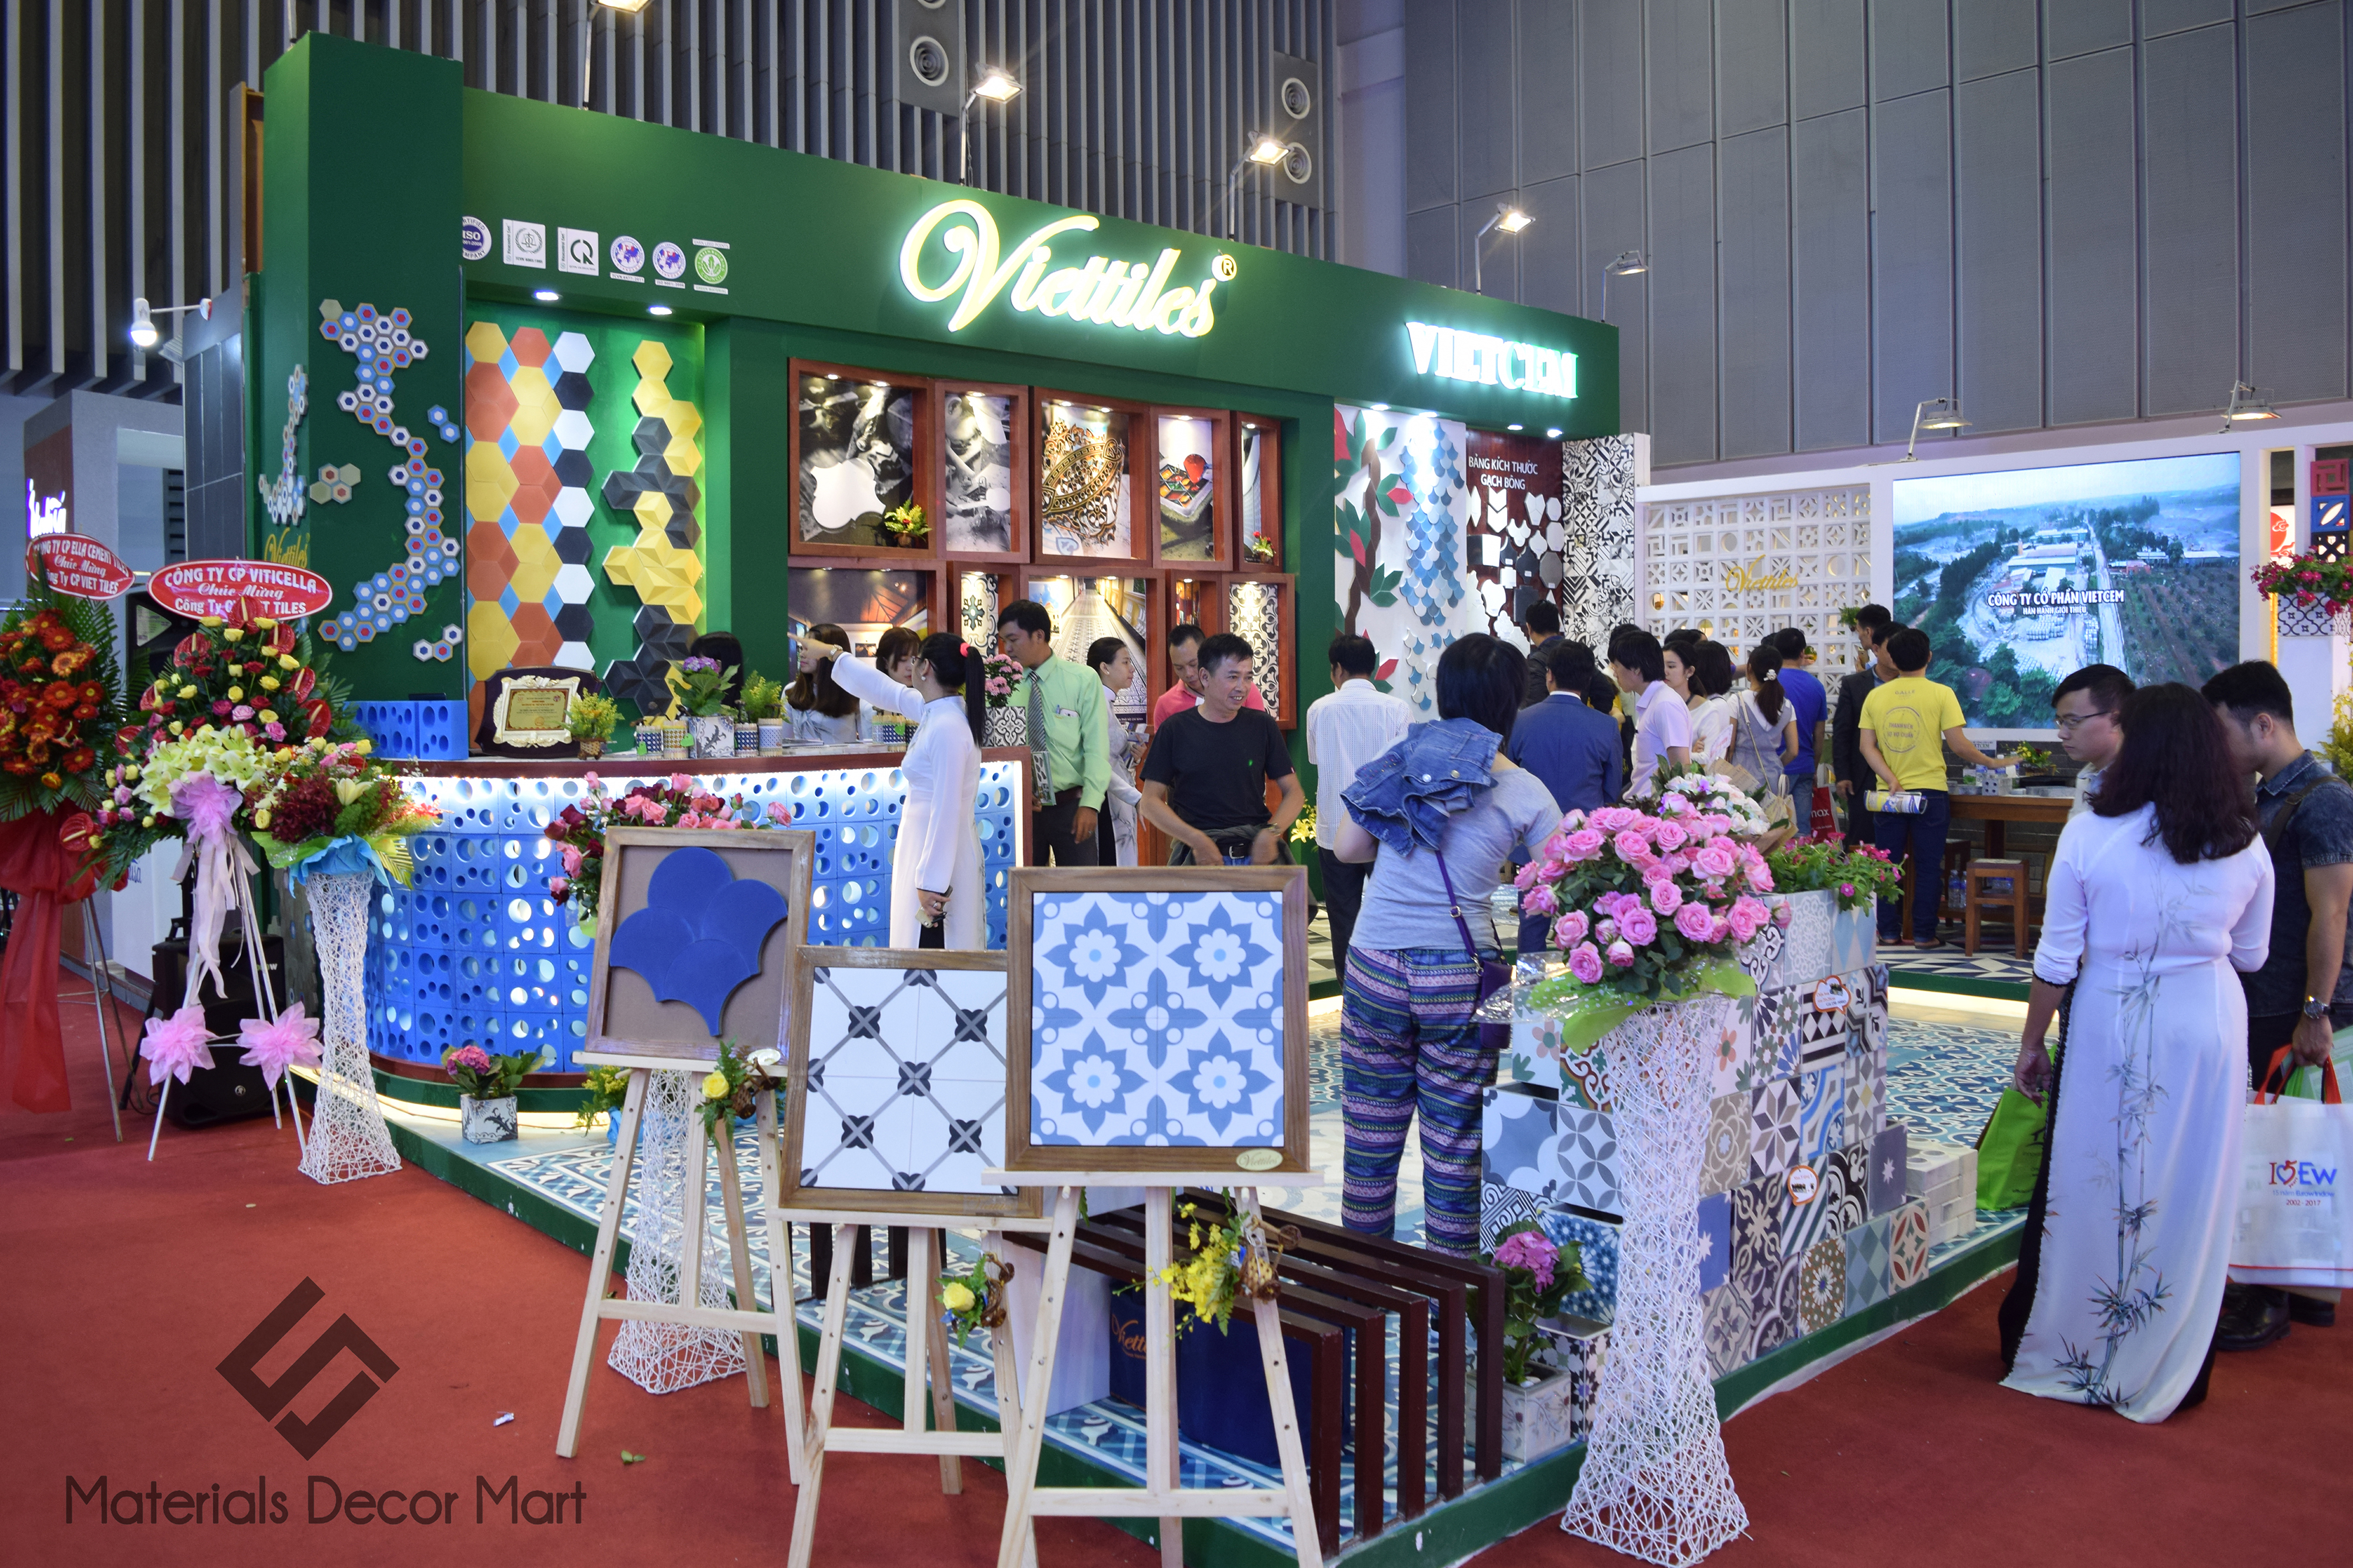 Triển lãm Vietbuild 2017- Trung tâm triển lãm, hội chợ Sài Gòn (SECC)